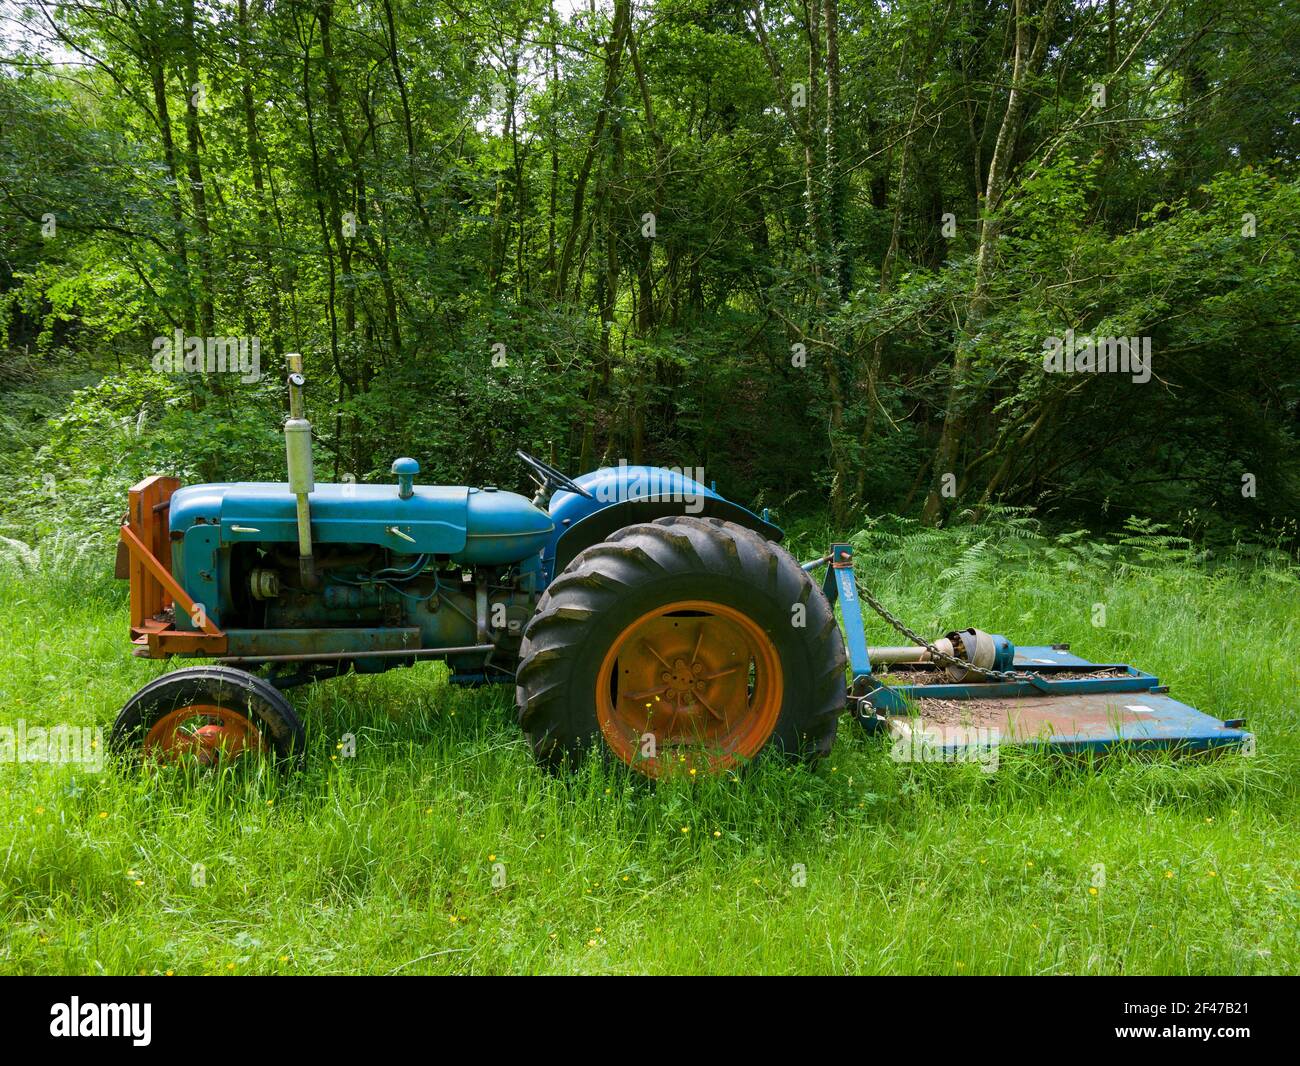 Un vecchio trattore diesel Fordson Super Major in erba lunga in un terreno boscoso. Foto Stock